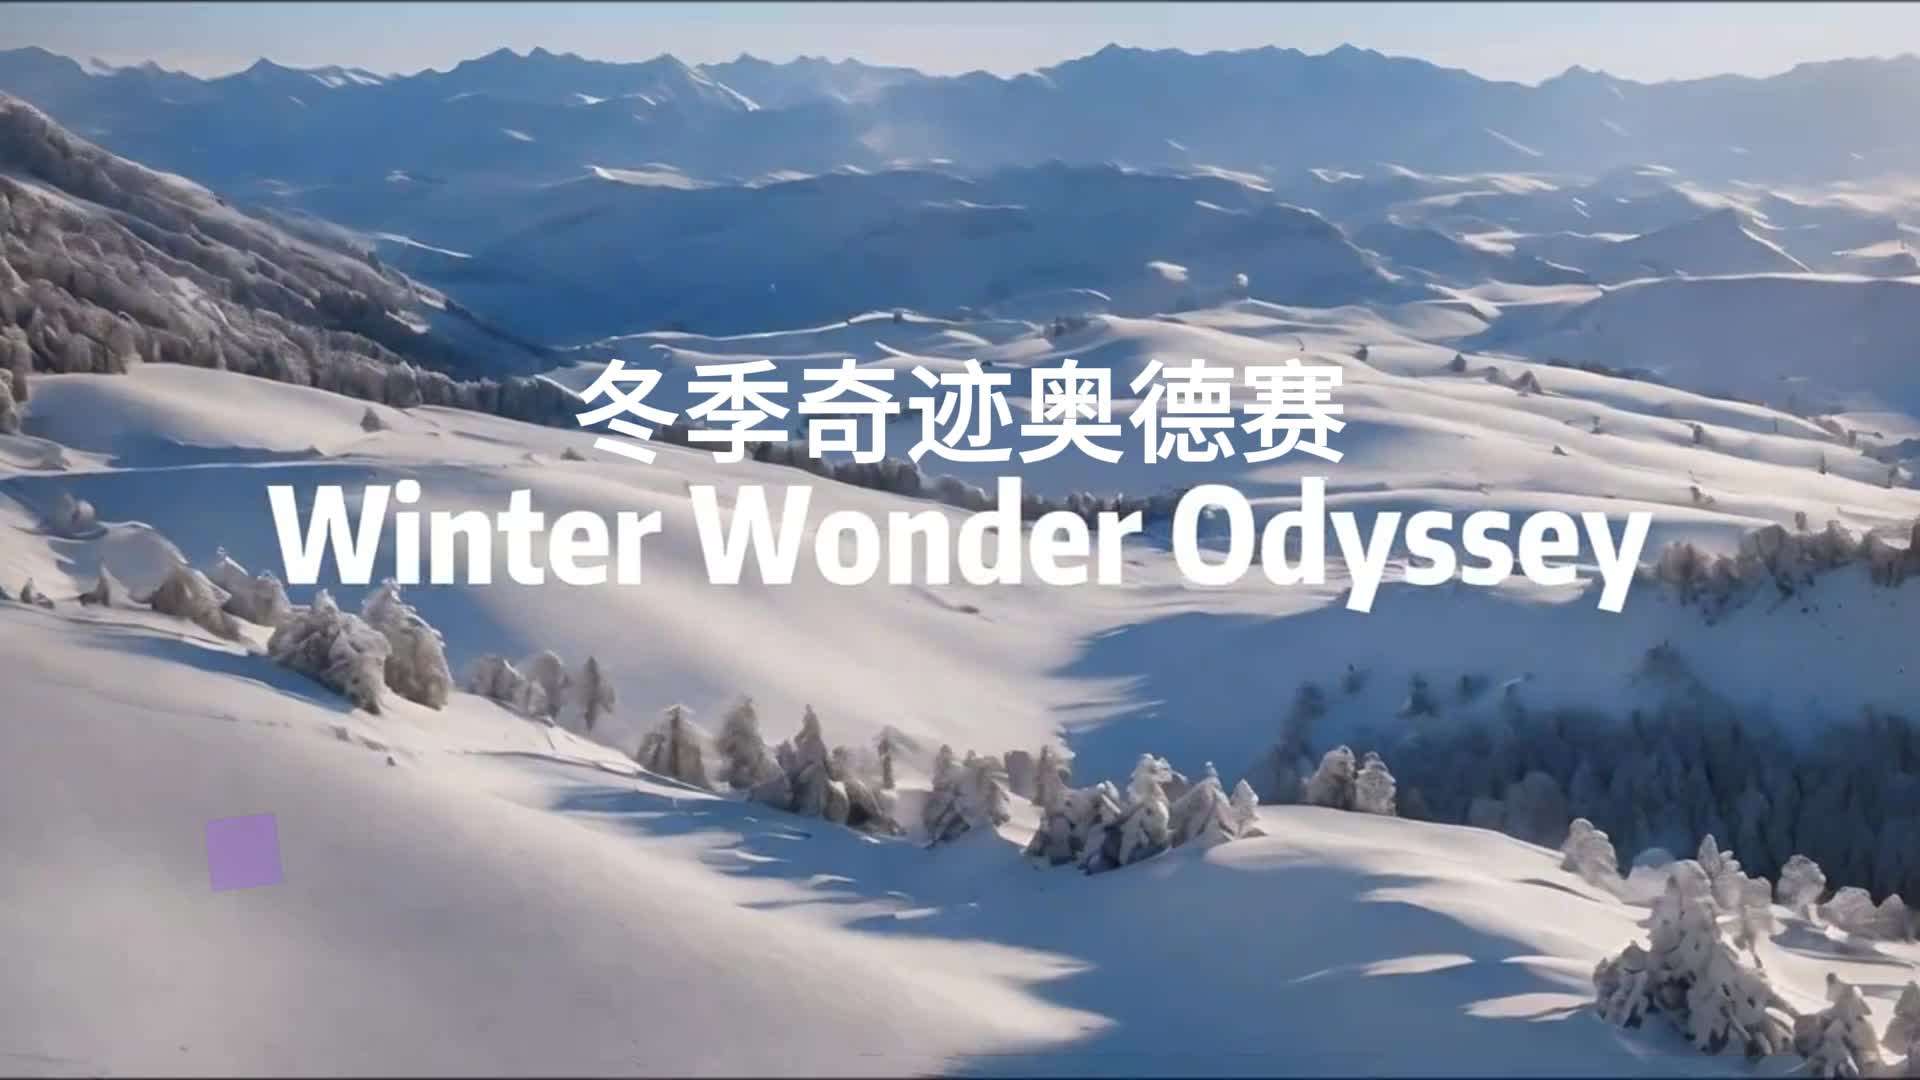 用runway gen2生成冬季滑雪旅游度假景区概念宣传AI视频